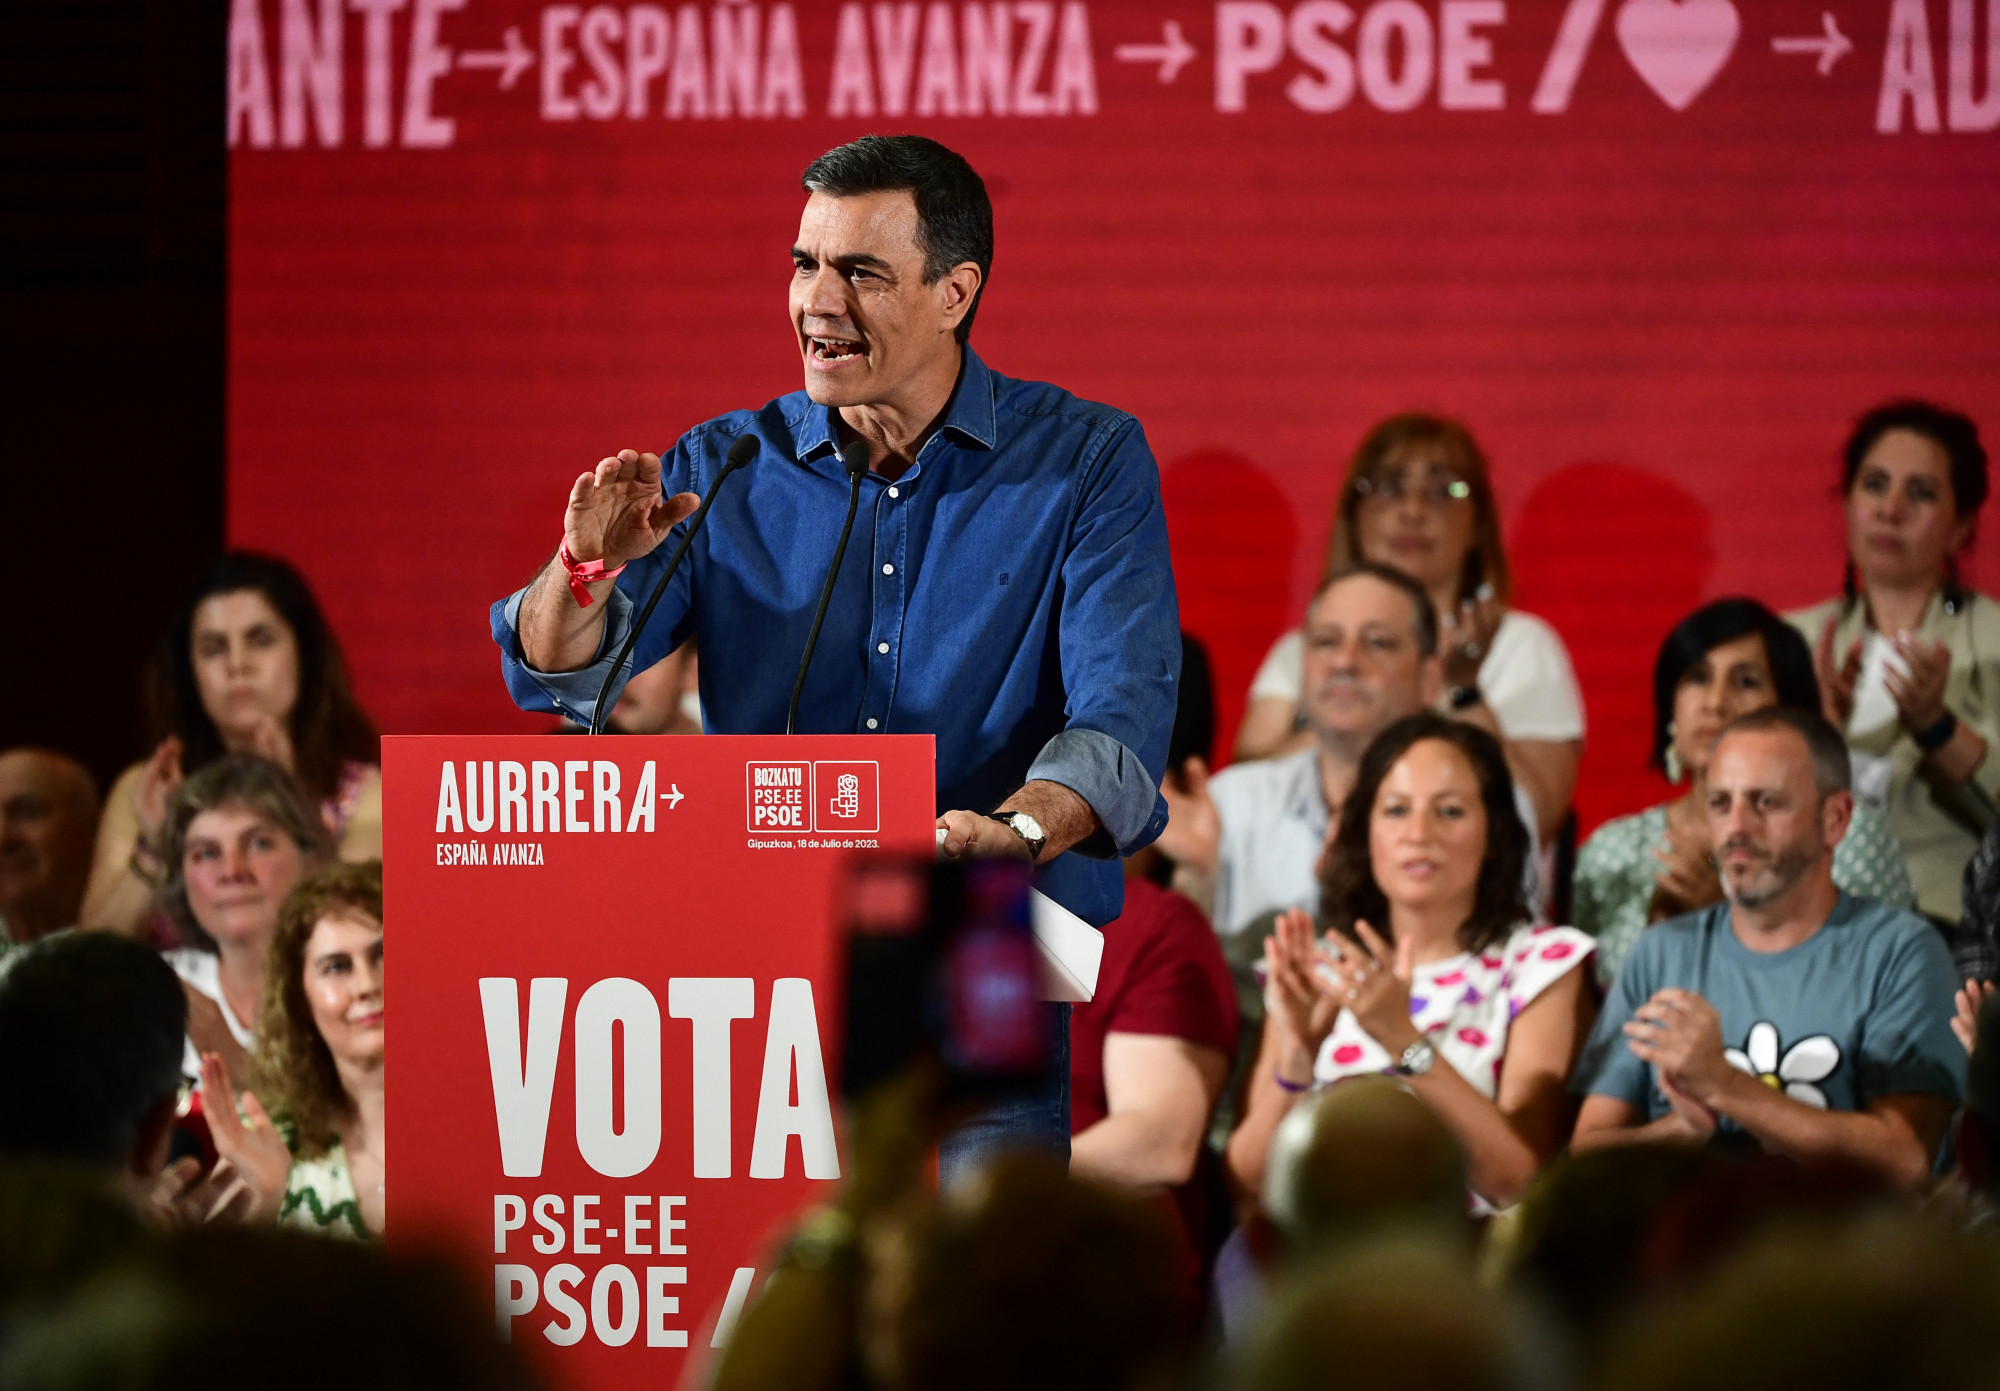 Pedro Sánchez miniszterelnök beszédet mond egy kampányeseményen